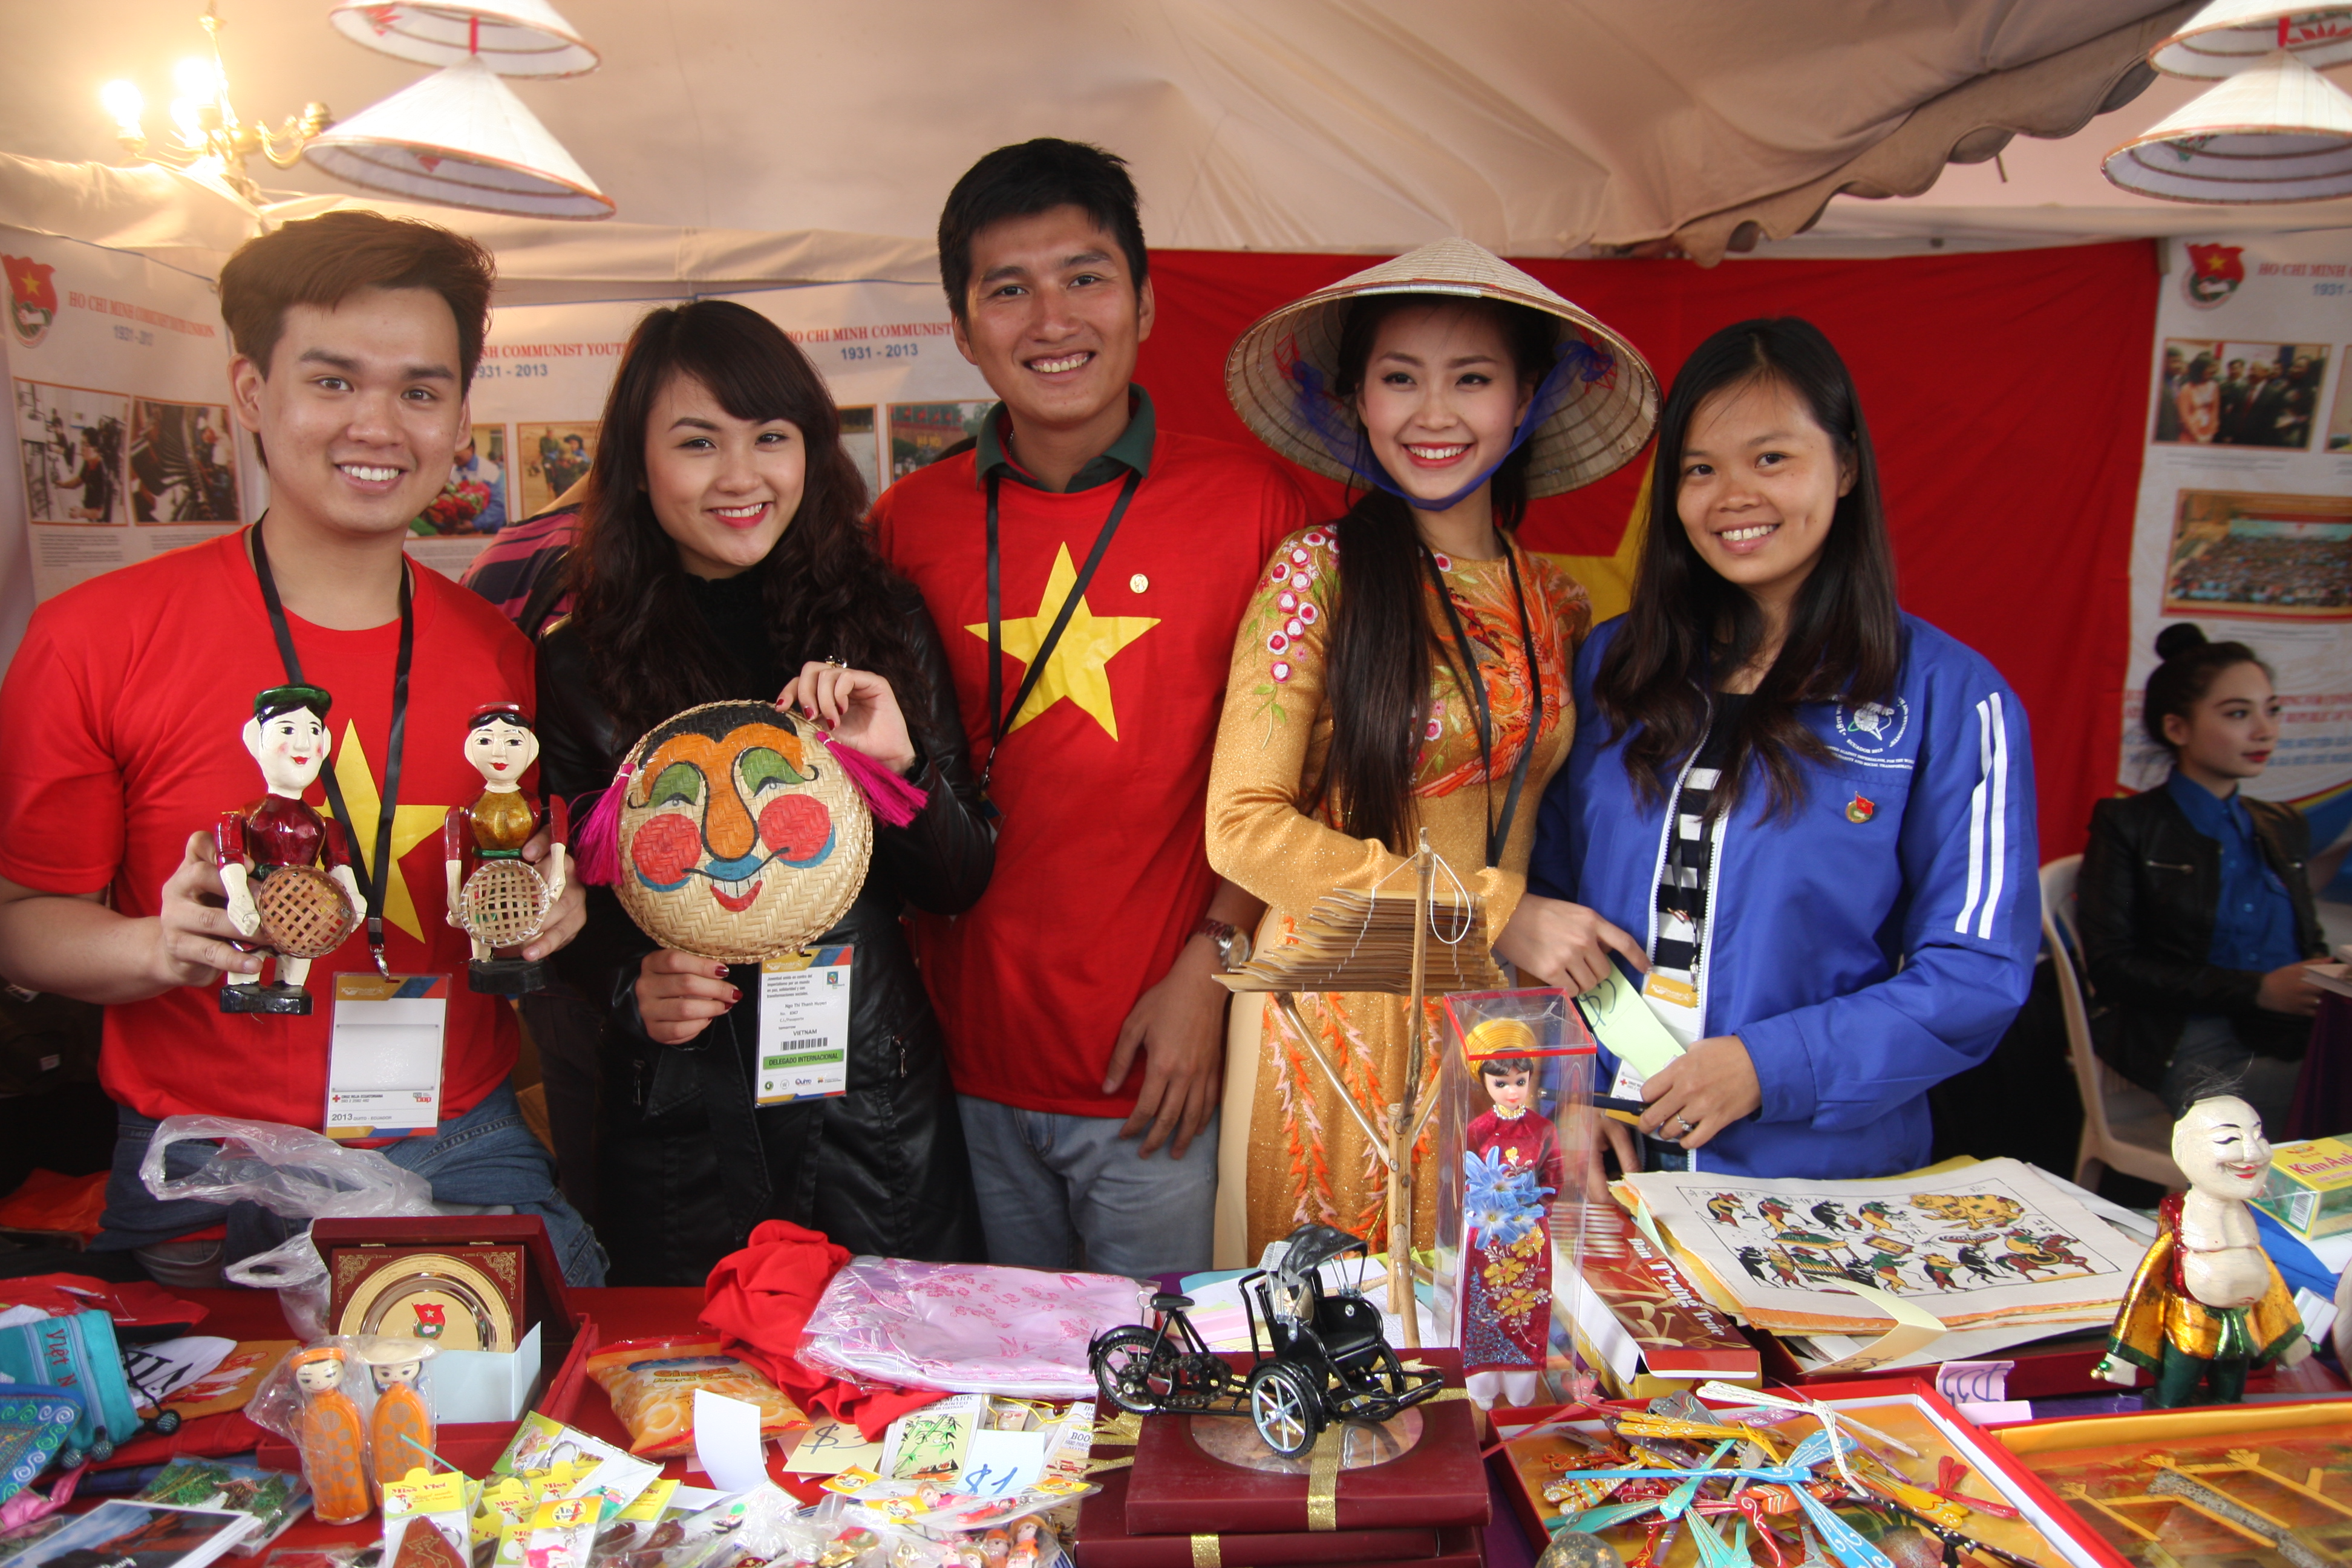 Trung Quân bán hàng “mát tay” ở Liên hoan Thanh niên - Sinh viên thế giới 2013 7